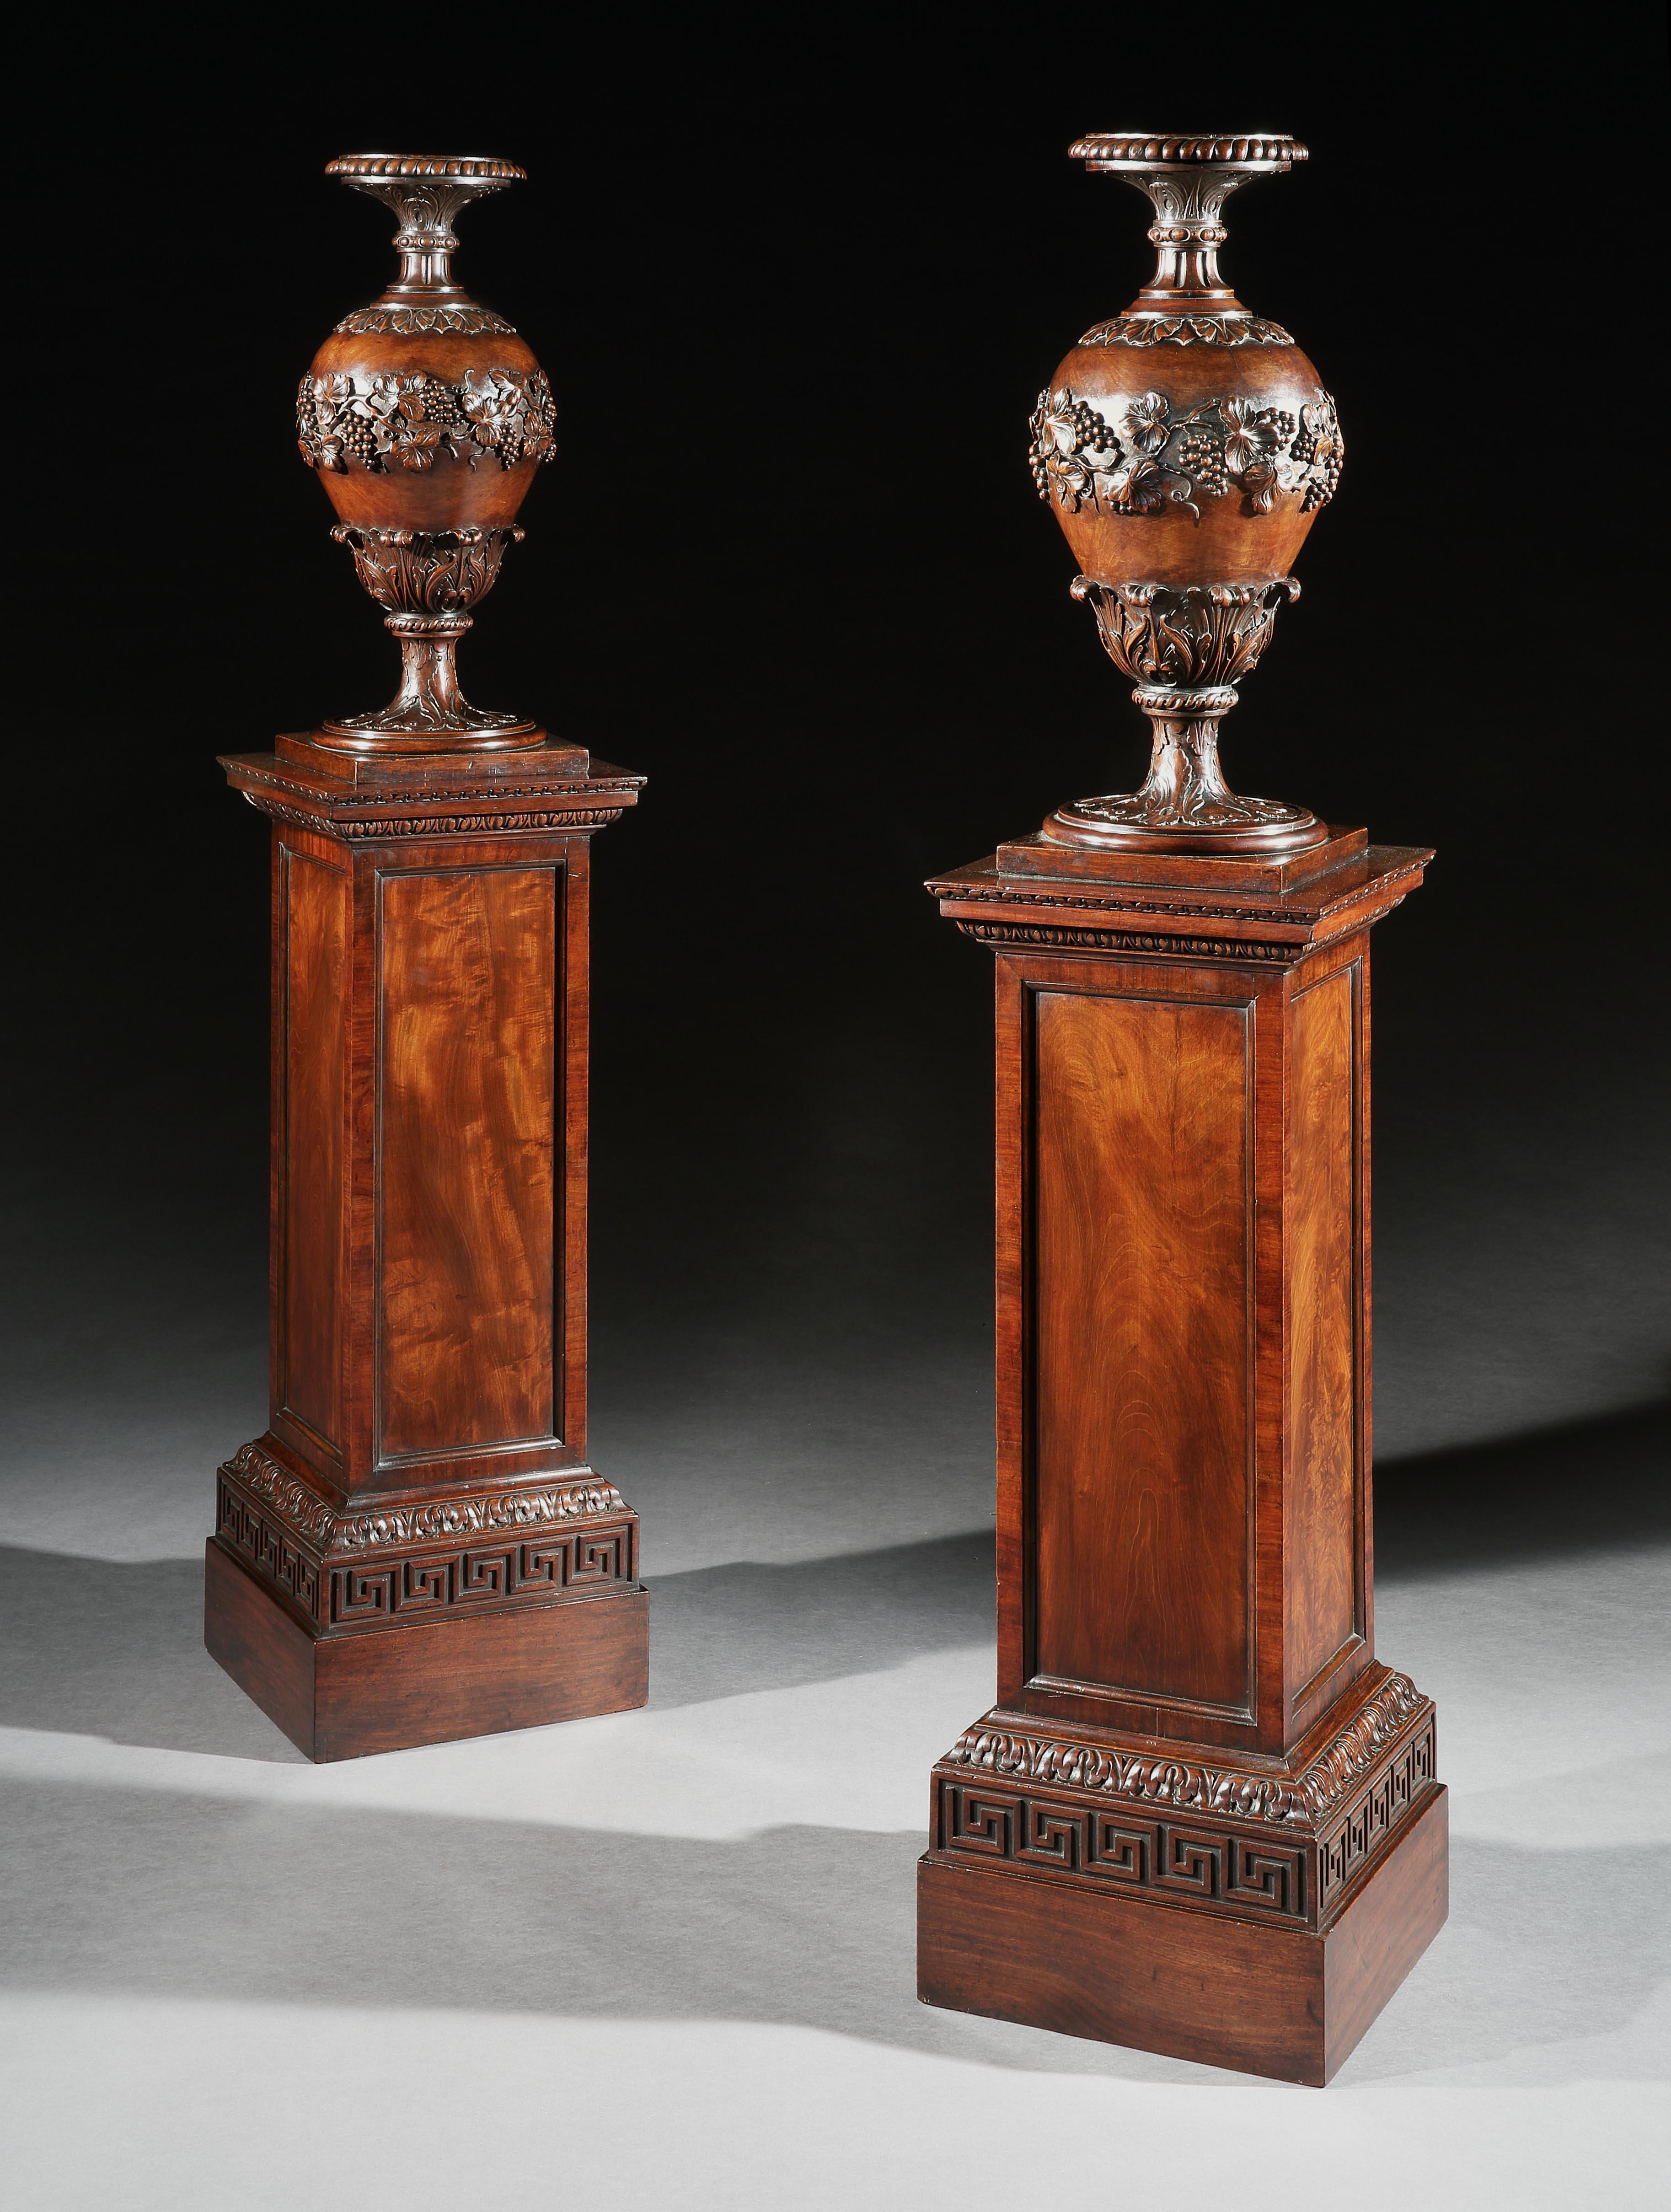 Une paire rare de flambeaux en acajou de George IV, les sections supérieures ayant des urnes superbement sculptées d'acanthe et de grappes de raisins suspendues aux feuilles de vigne, au-dessus d'une base de plinthe bien figurée sculptée d'acanthe,